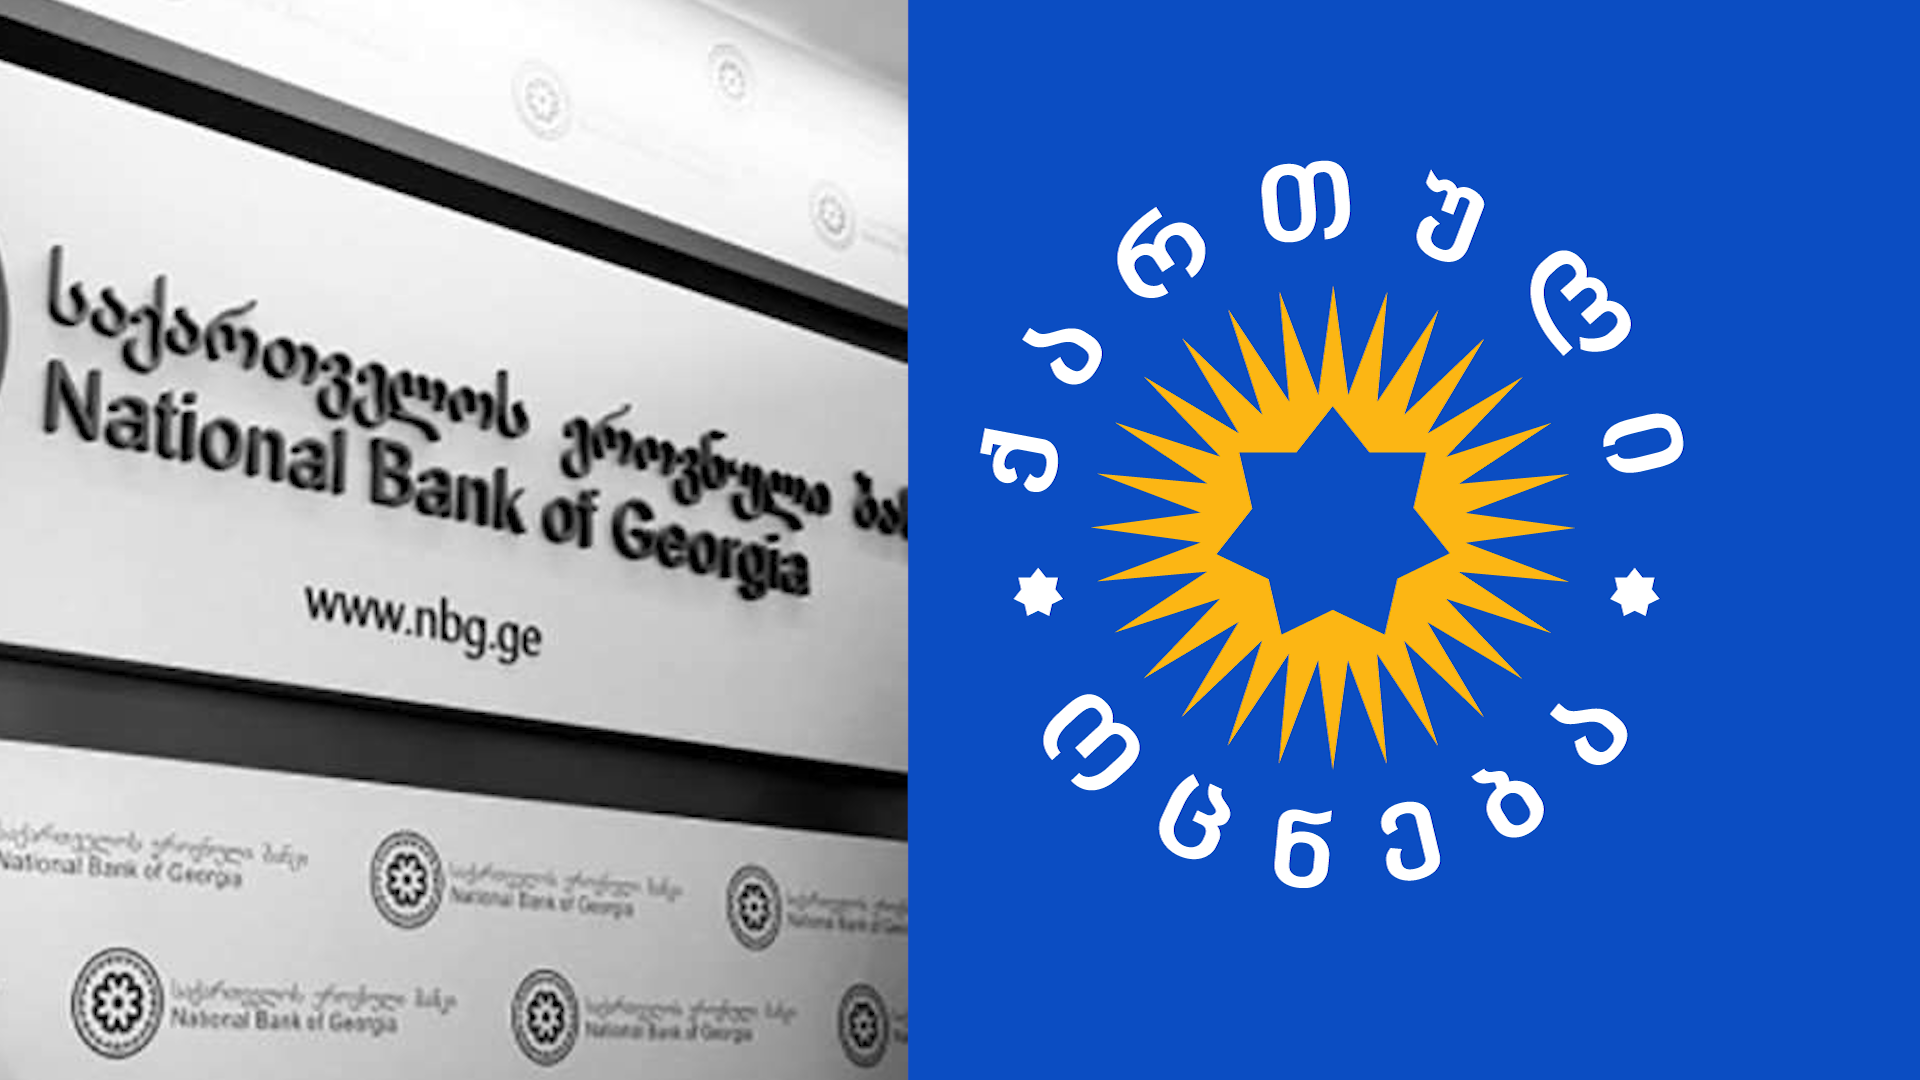 ეროვნული ბანკი არ ეთანხმება “ქართული ოცნების“ დეპუტატების ინიციატივას